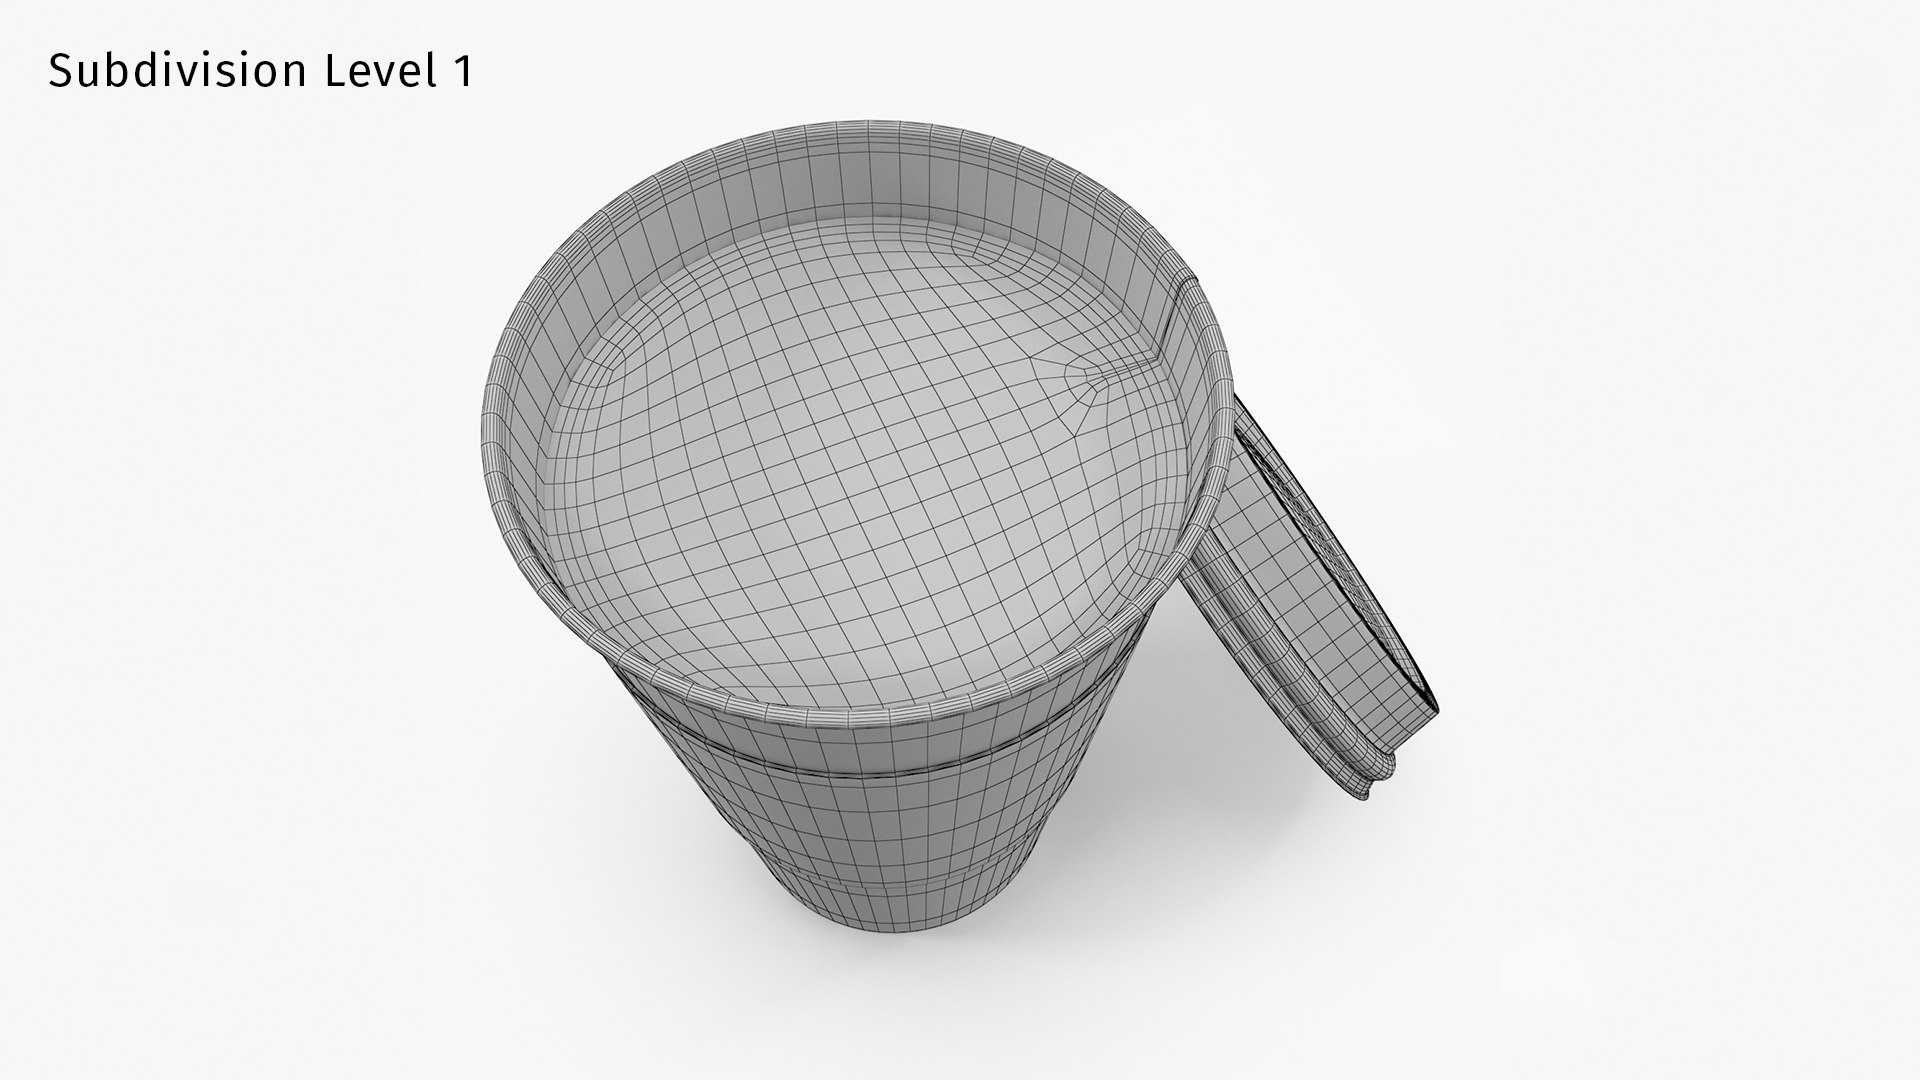 Lavazza Coffee Cup 3D - TurboSquid 1811568